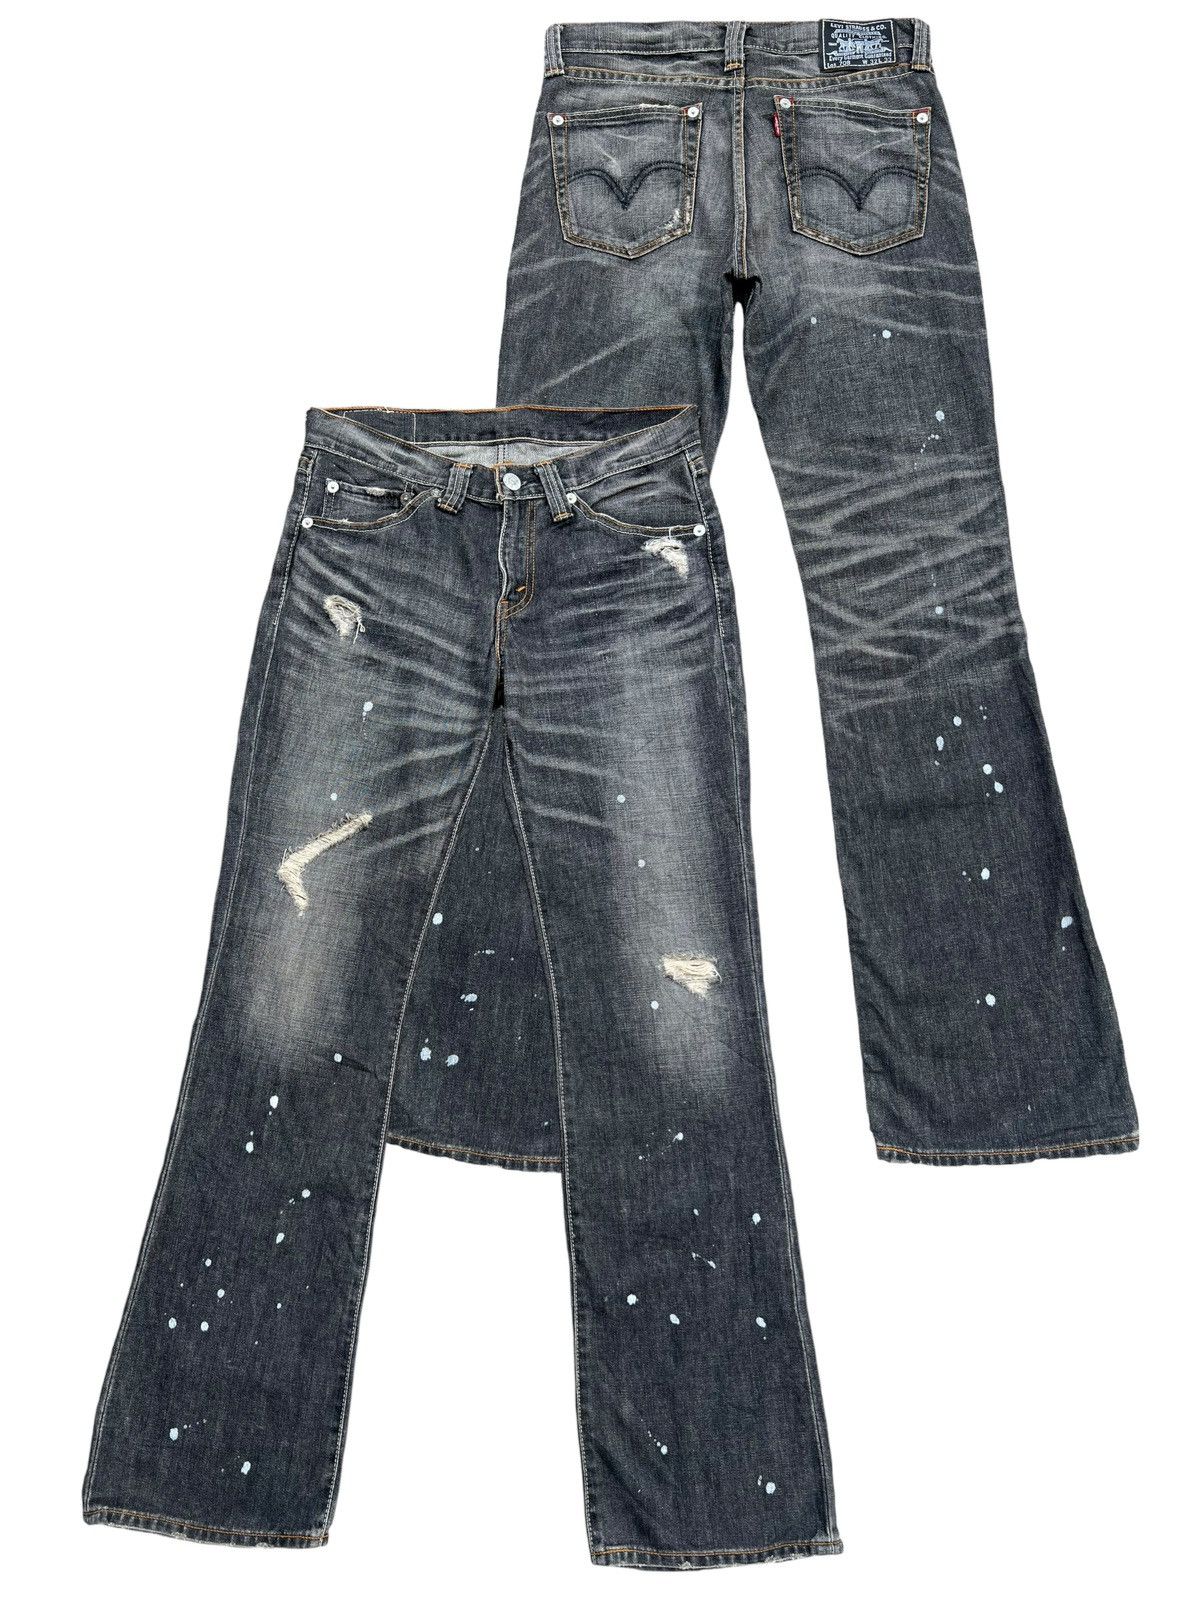 Levis 708 Distressed Paint Lowrise Flare Denim Jeans 33x34 - 1